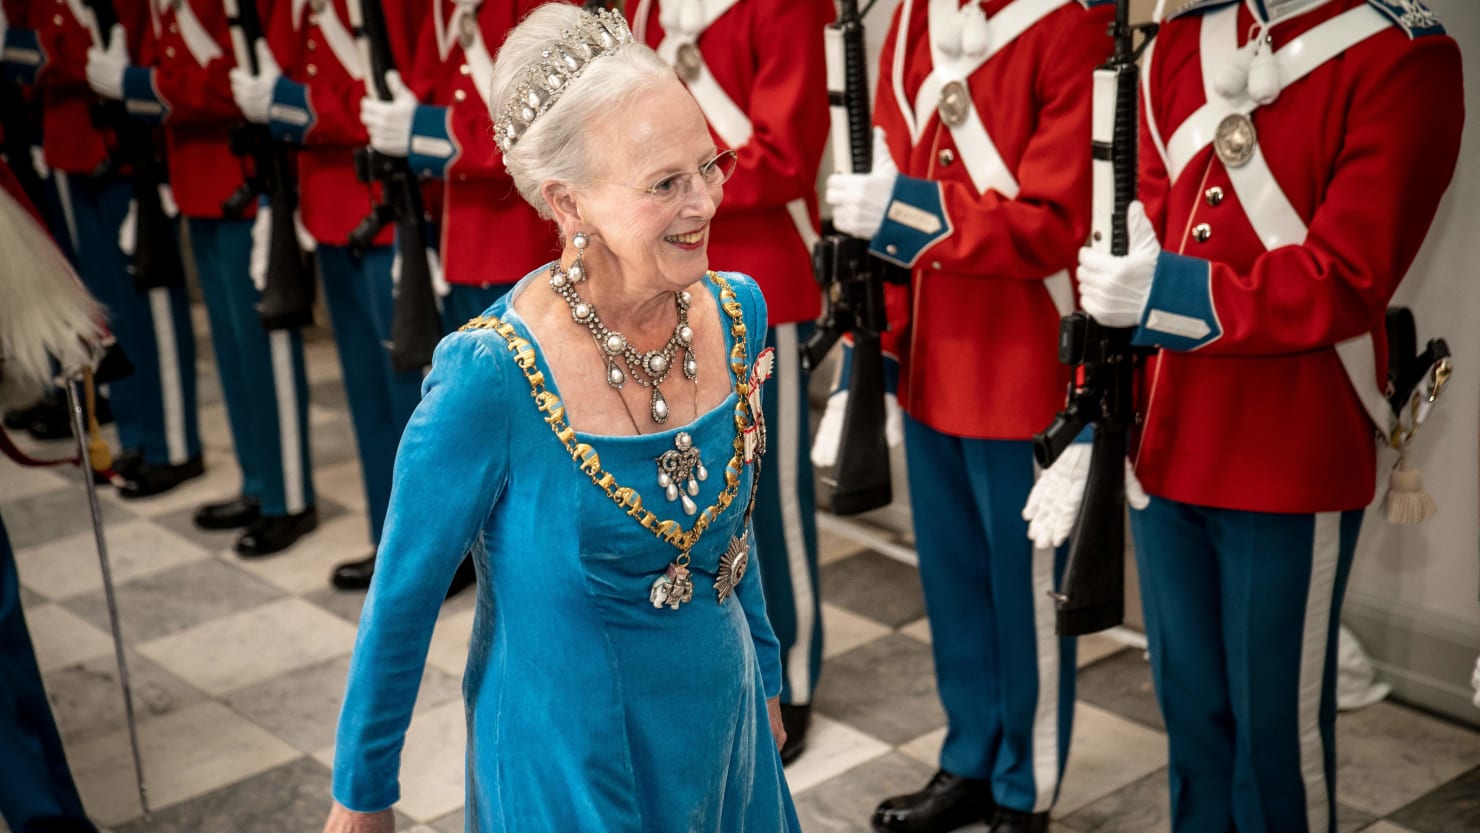 La reina danesa desata una disputa al retirar los títulos reales a sus nietos